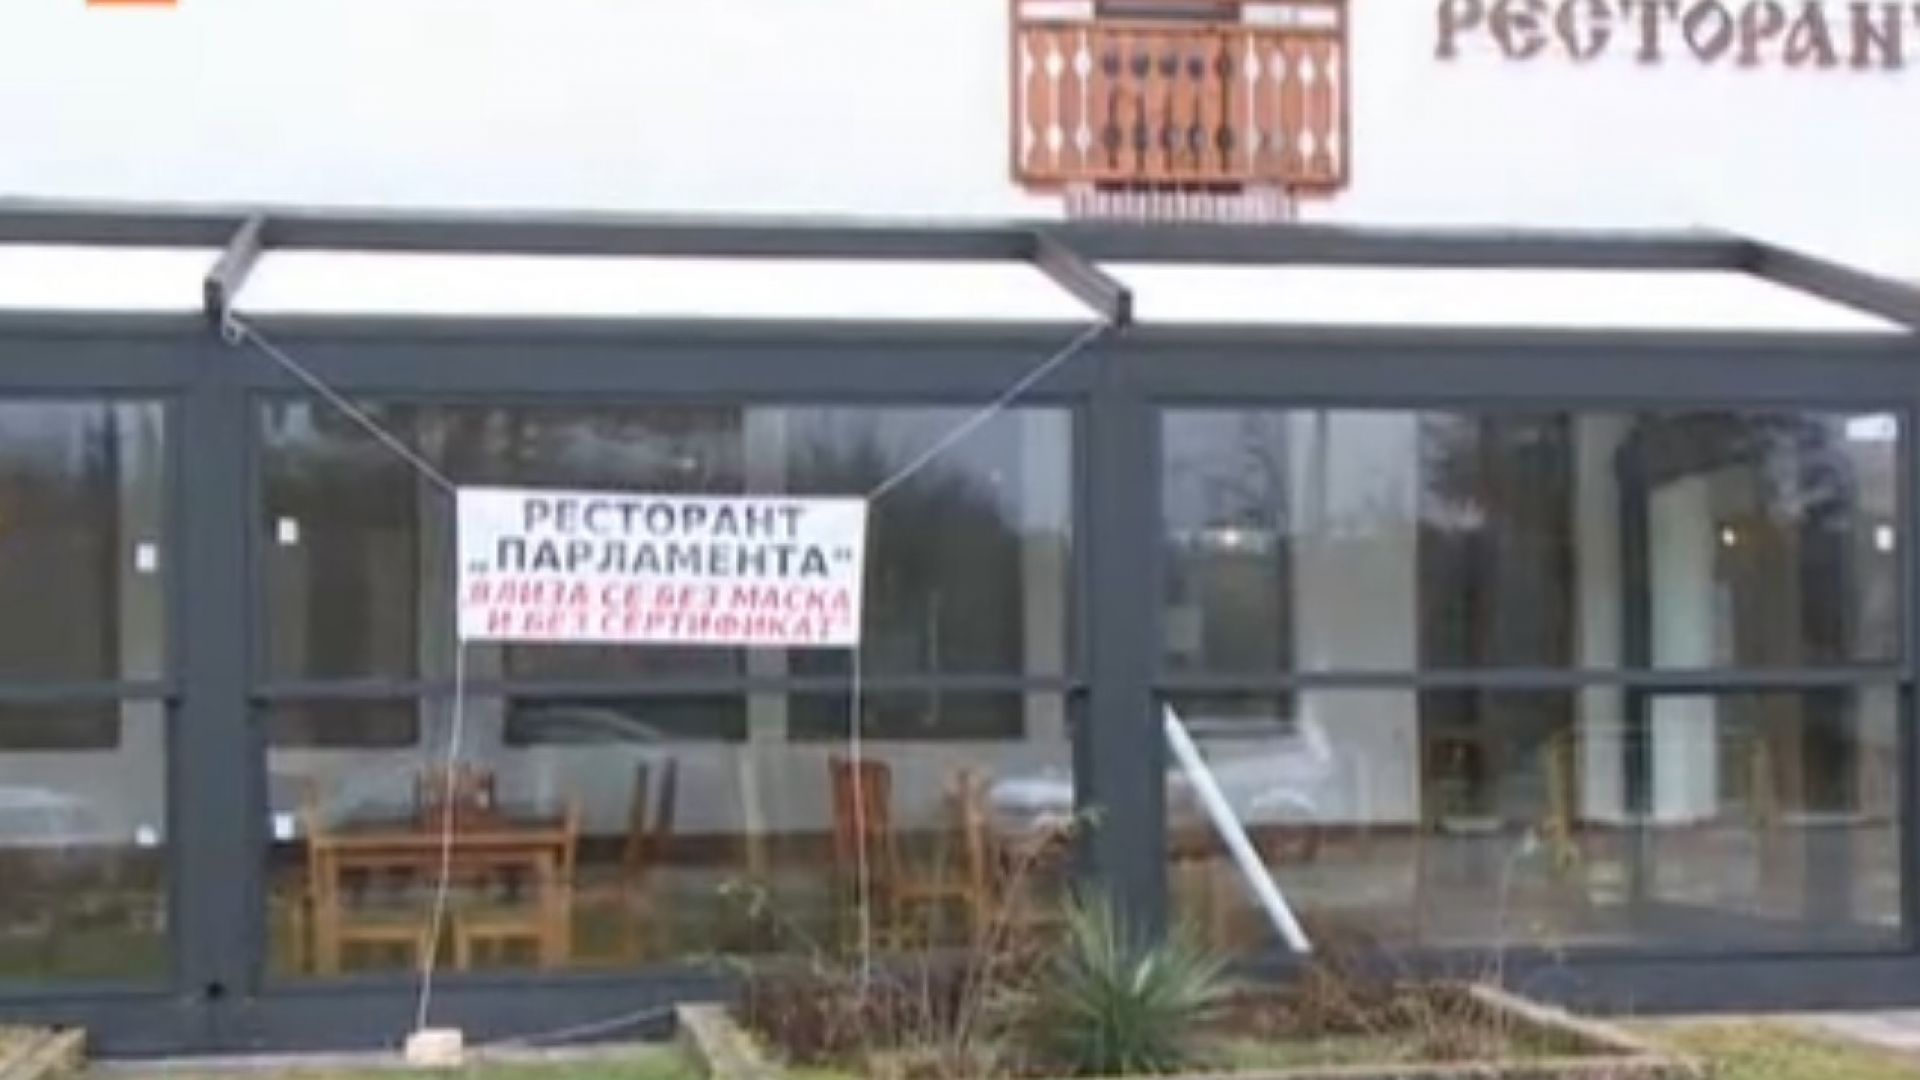 Ресторант "Парламент" в Пороище пуска клиенти без зелен сертификат 